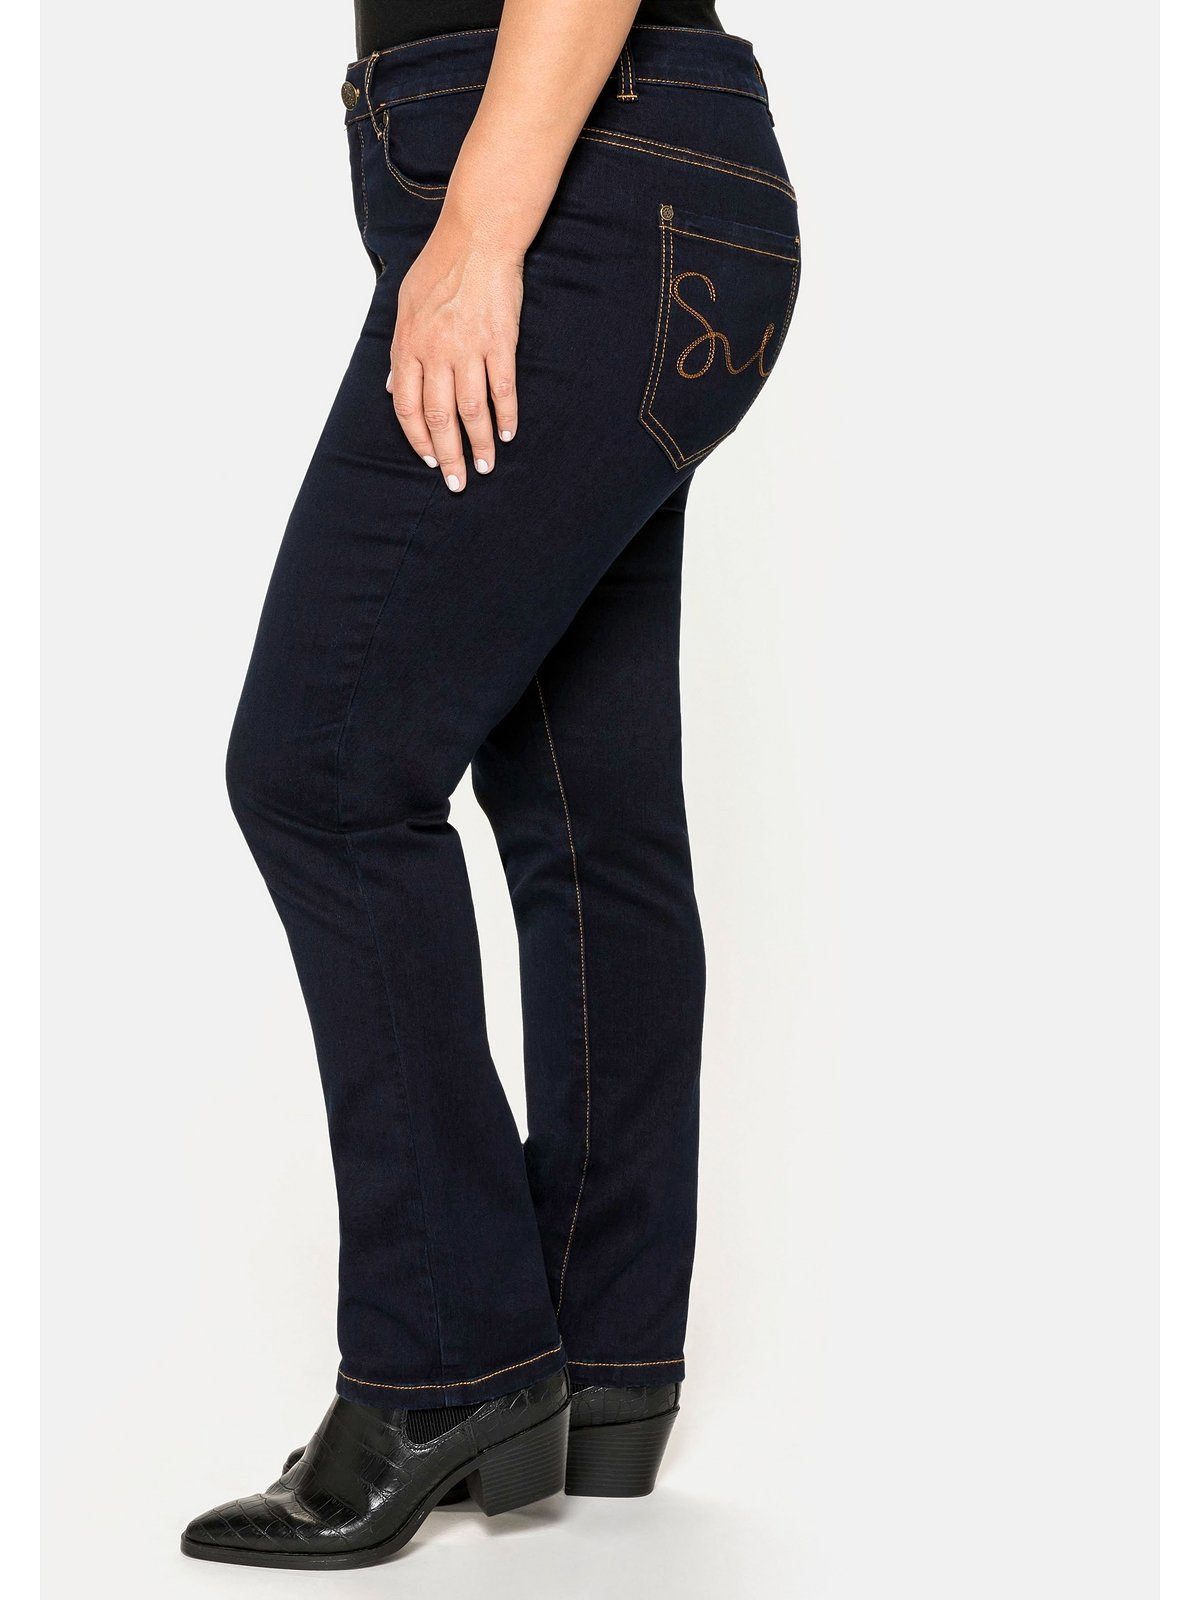 Stretch-Jeans Größen im Denim 5-Pocket-Stil Sheego Große black blue